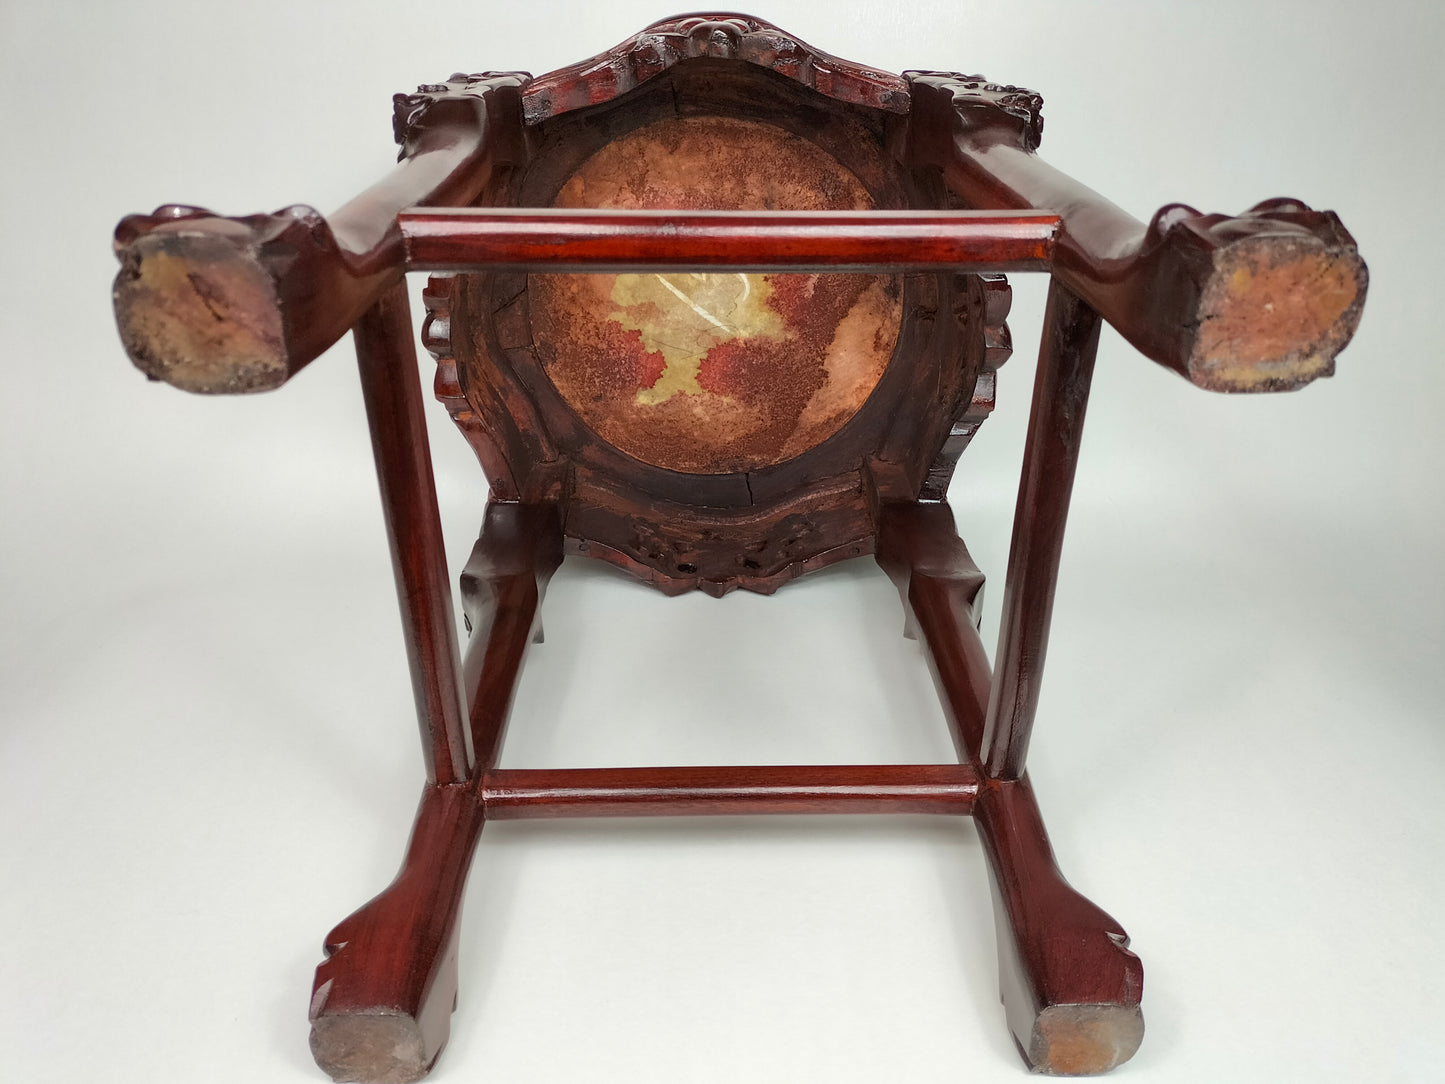 镶嵌大理石台面的中式木制边桌 // 红木 - 20 世纪